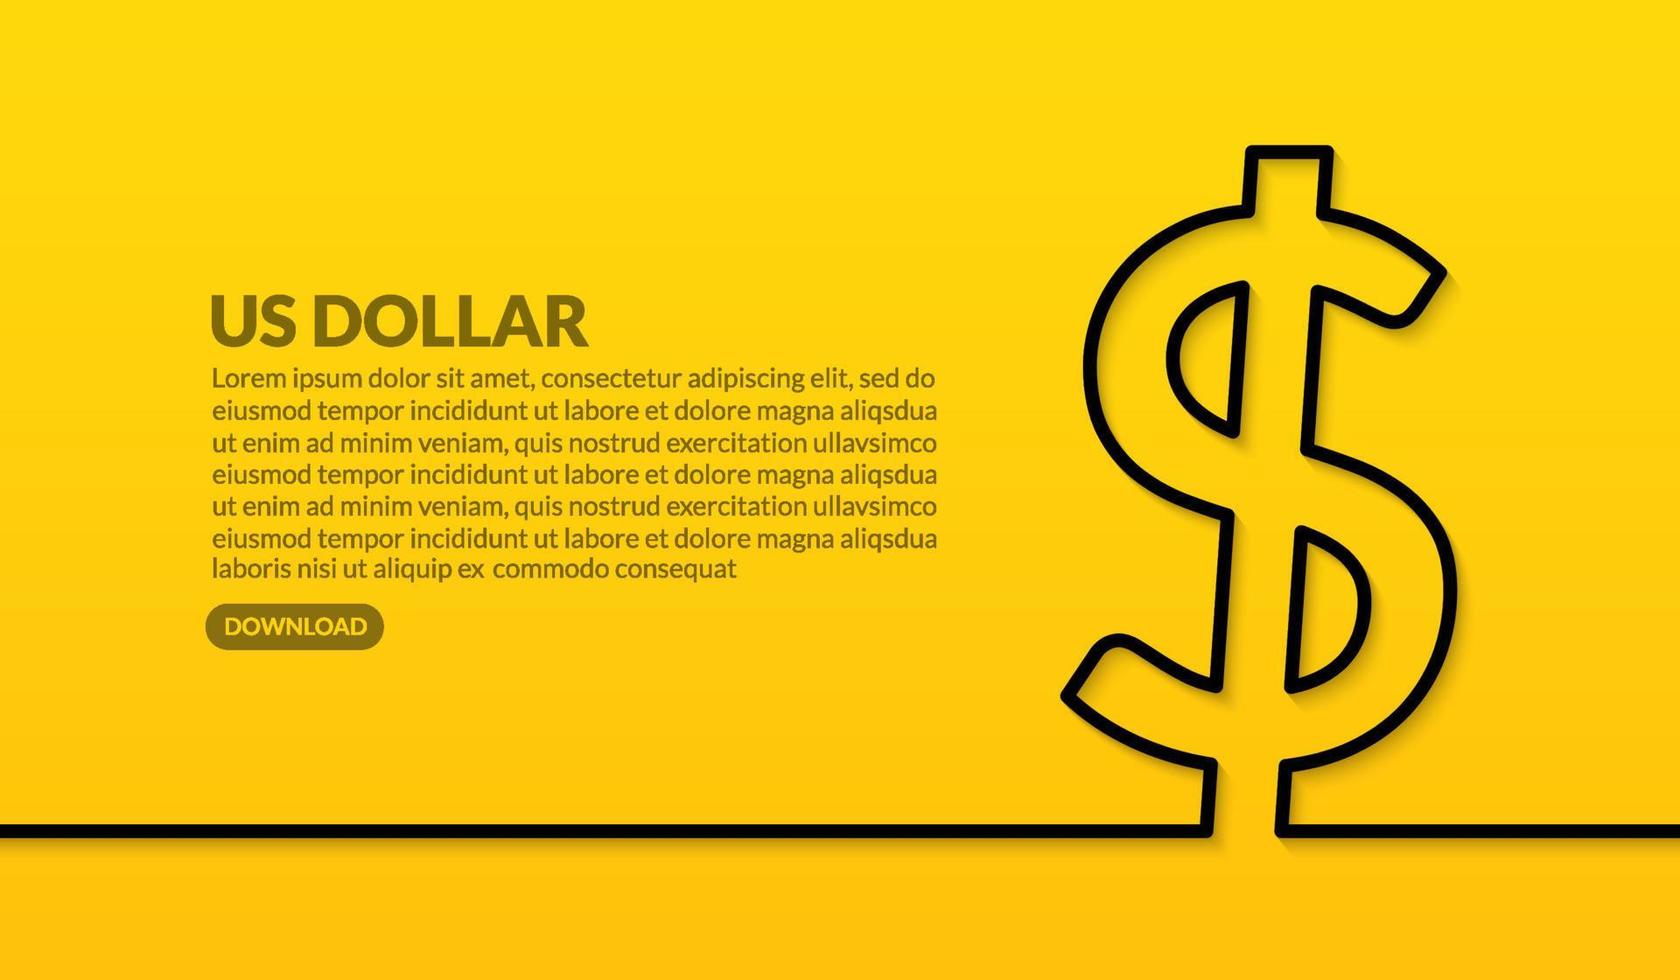 US-Dollar-Währung minimales Liniendesign auf gelbem Hintergrund, Online-Zahlungs- und Austauschkonzept vektor